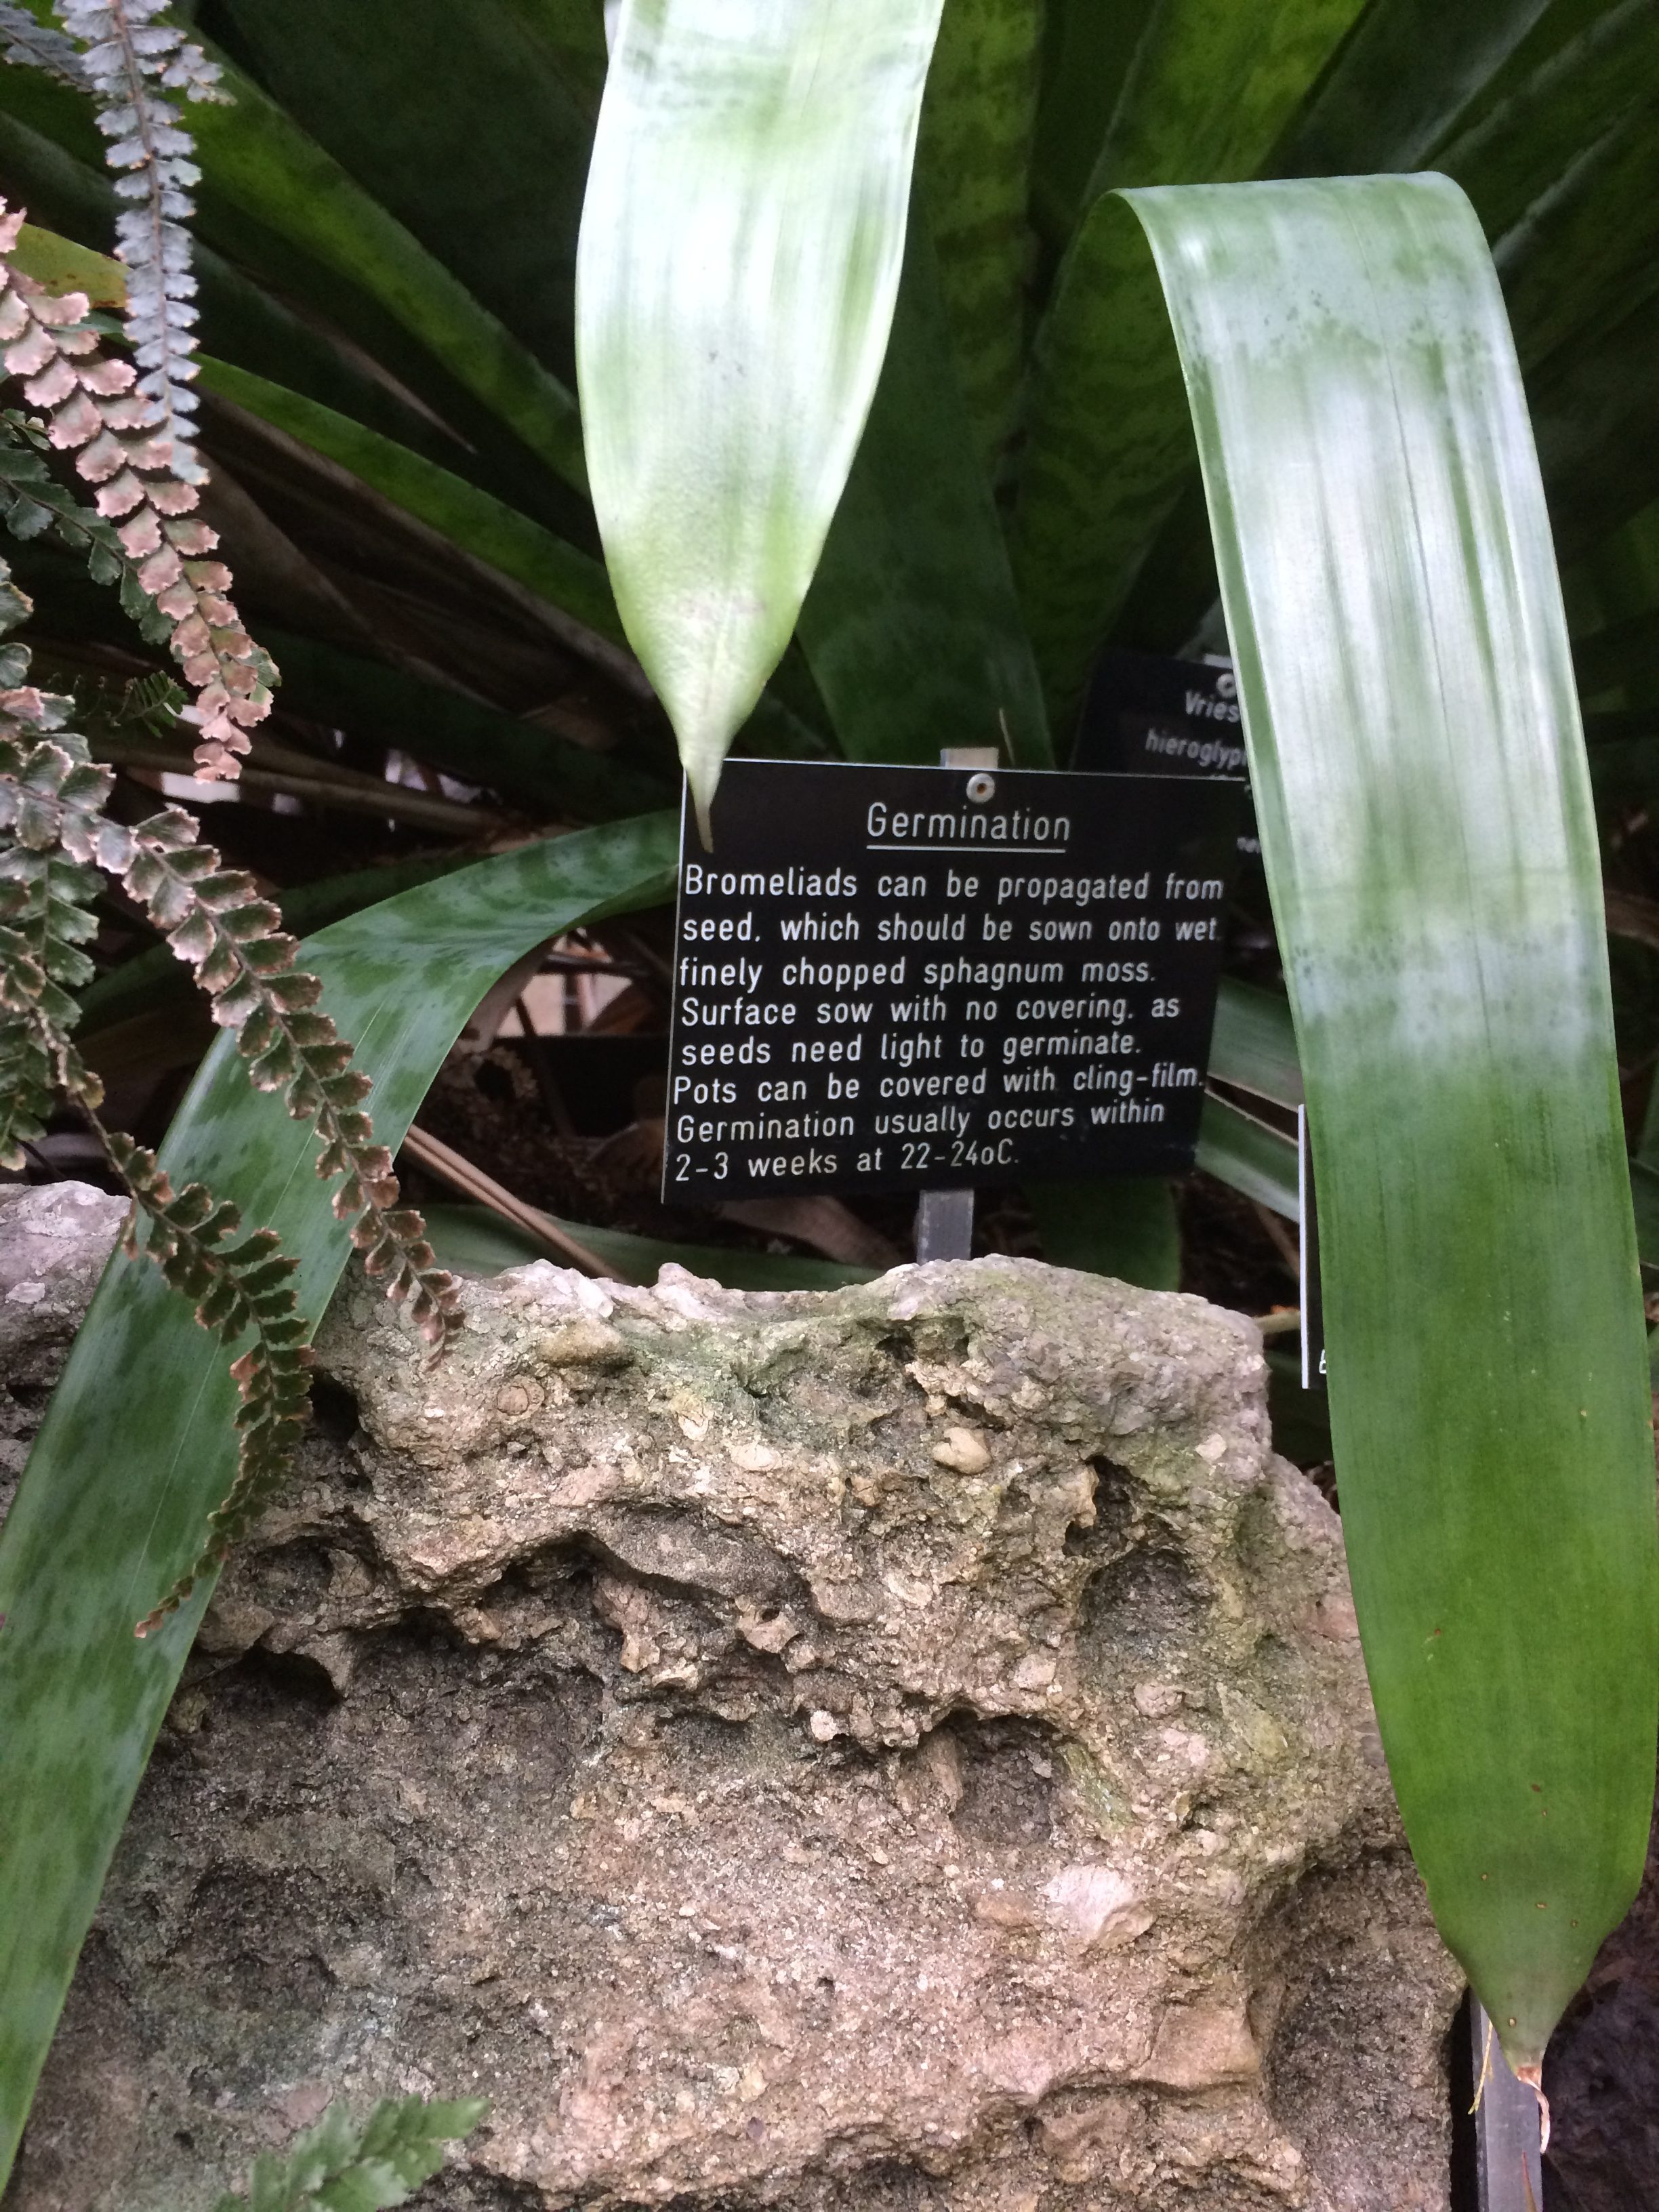 Bromeliad germination advice from Glasgow Botanic Gardens